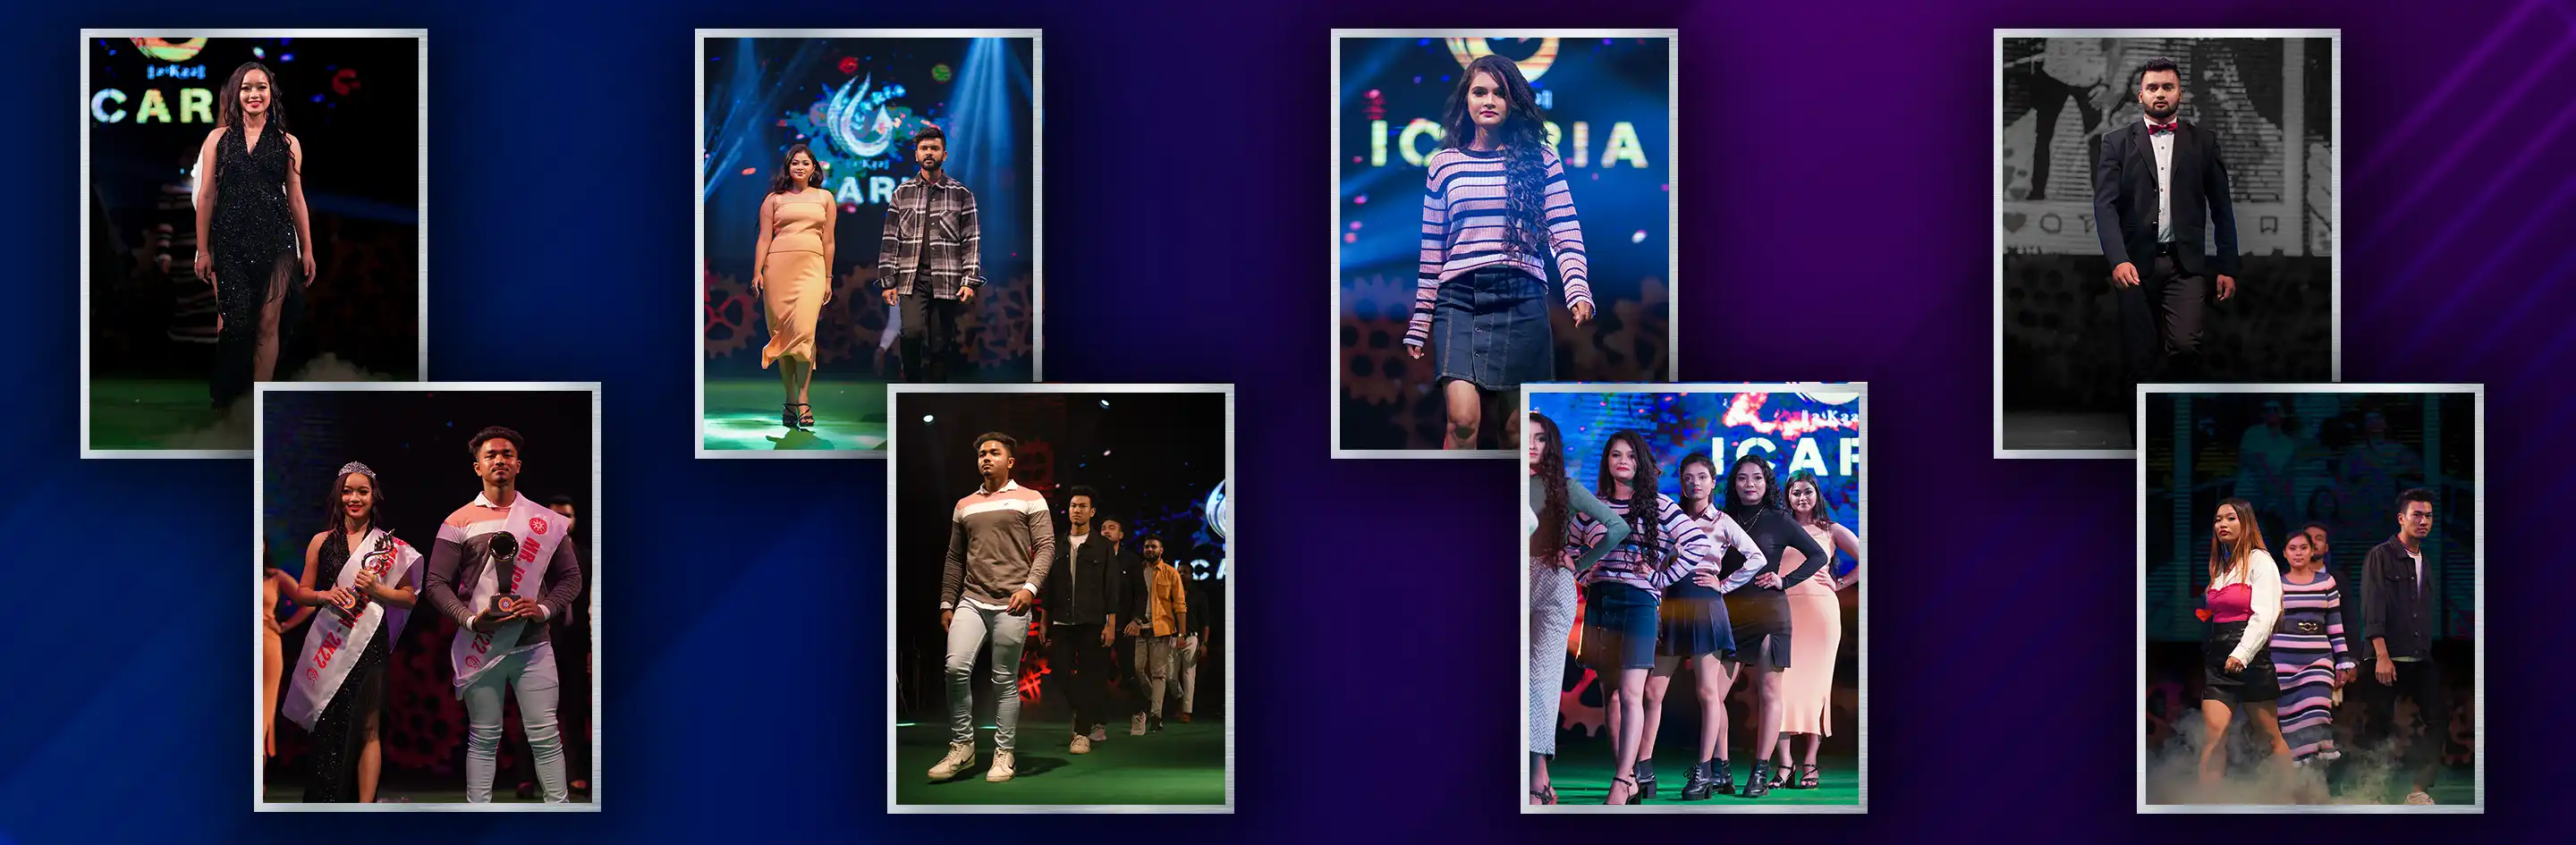 Fashion show at ICARIA